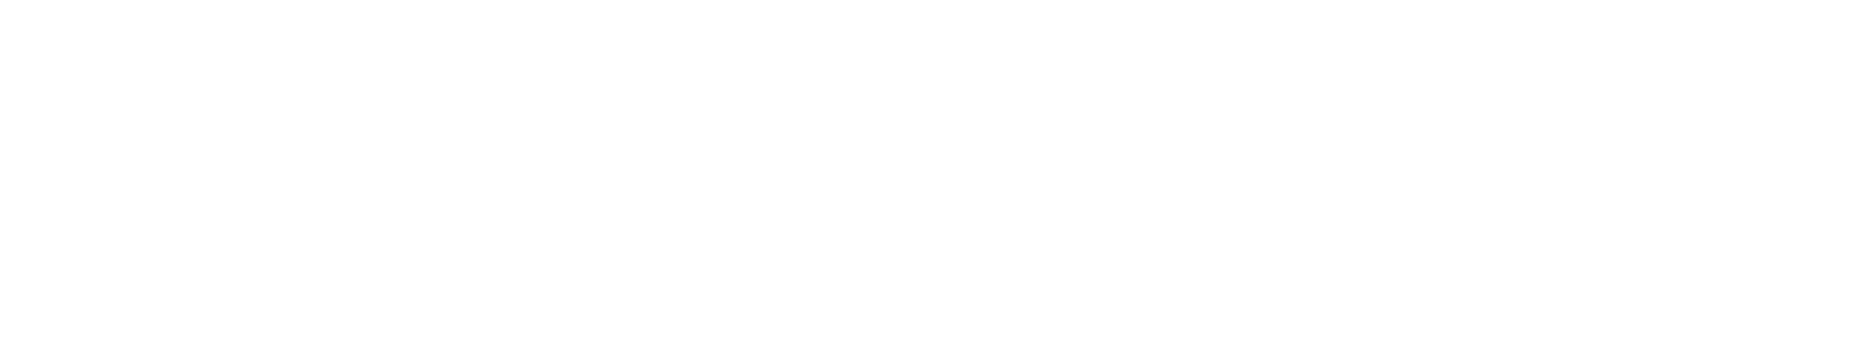 Dicktown_Show_Logo